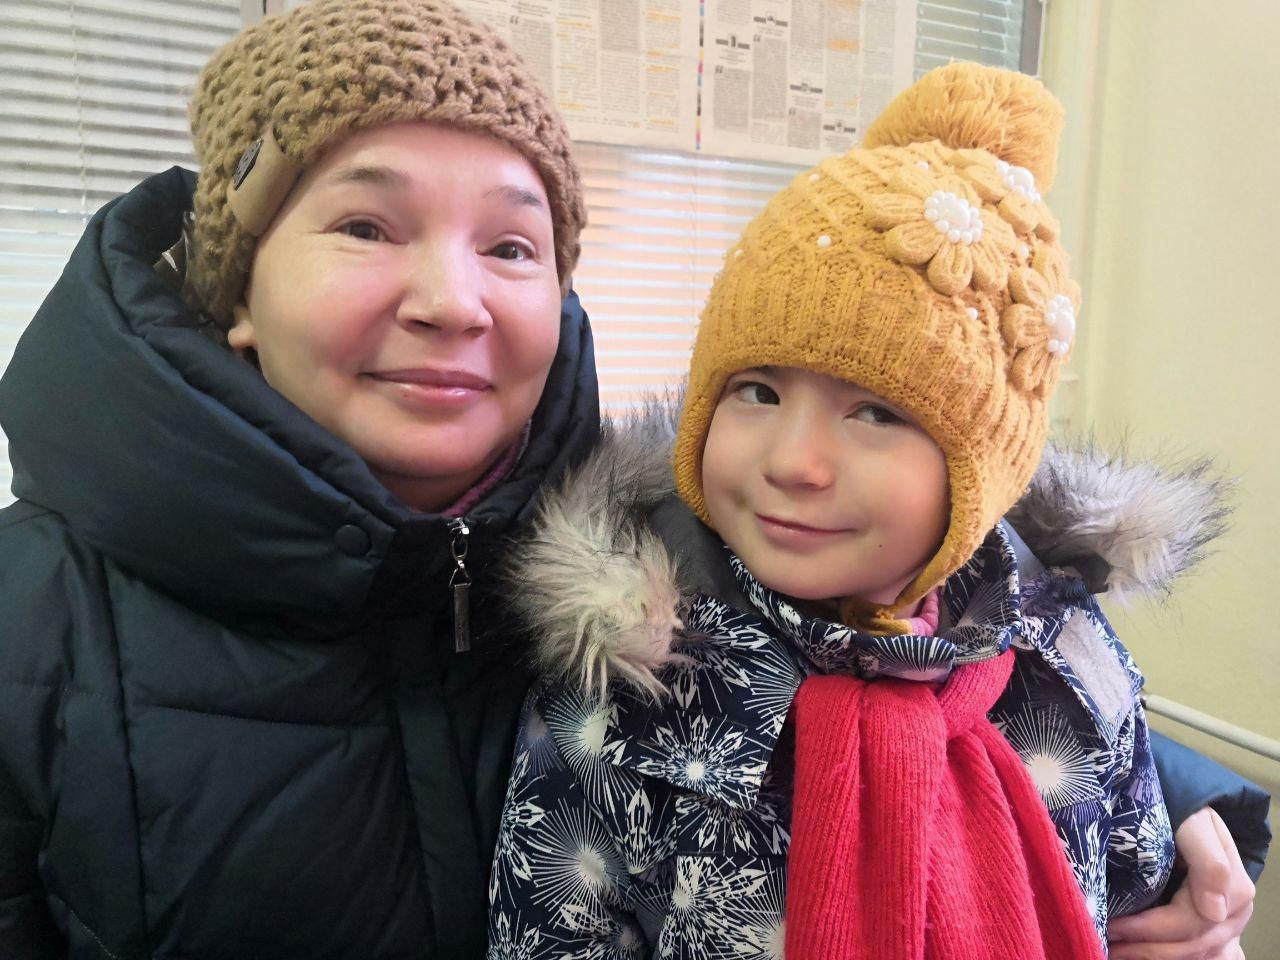 У Вари - аутизм. Семья просит помощи - развивающие занятия обойдутся в 20 тысяч рублей